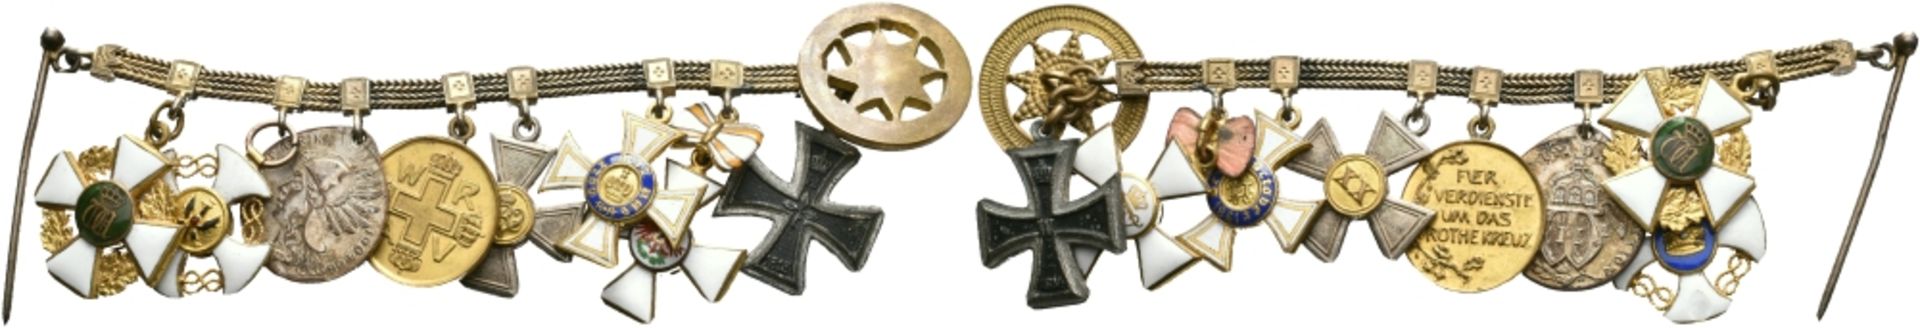 Miniaturkette mit 8x Auszeichnungen, u.a. Preußen Eisernes Kreuz 1914 2. Klasse, Roter Adler Orden K